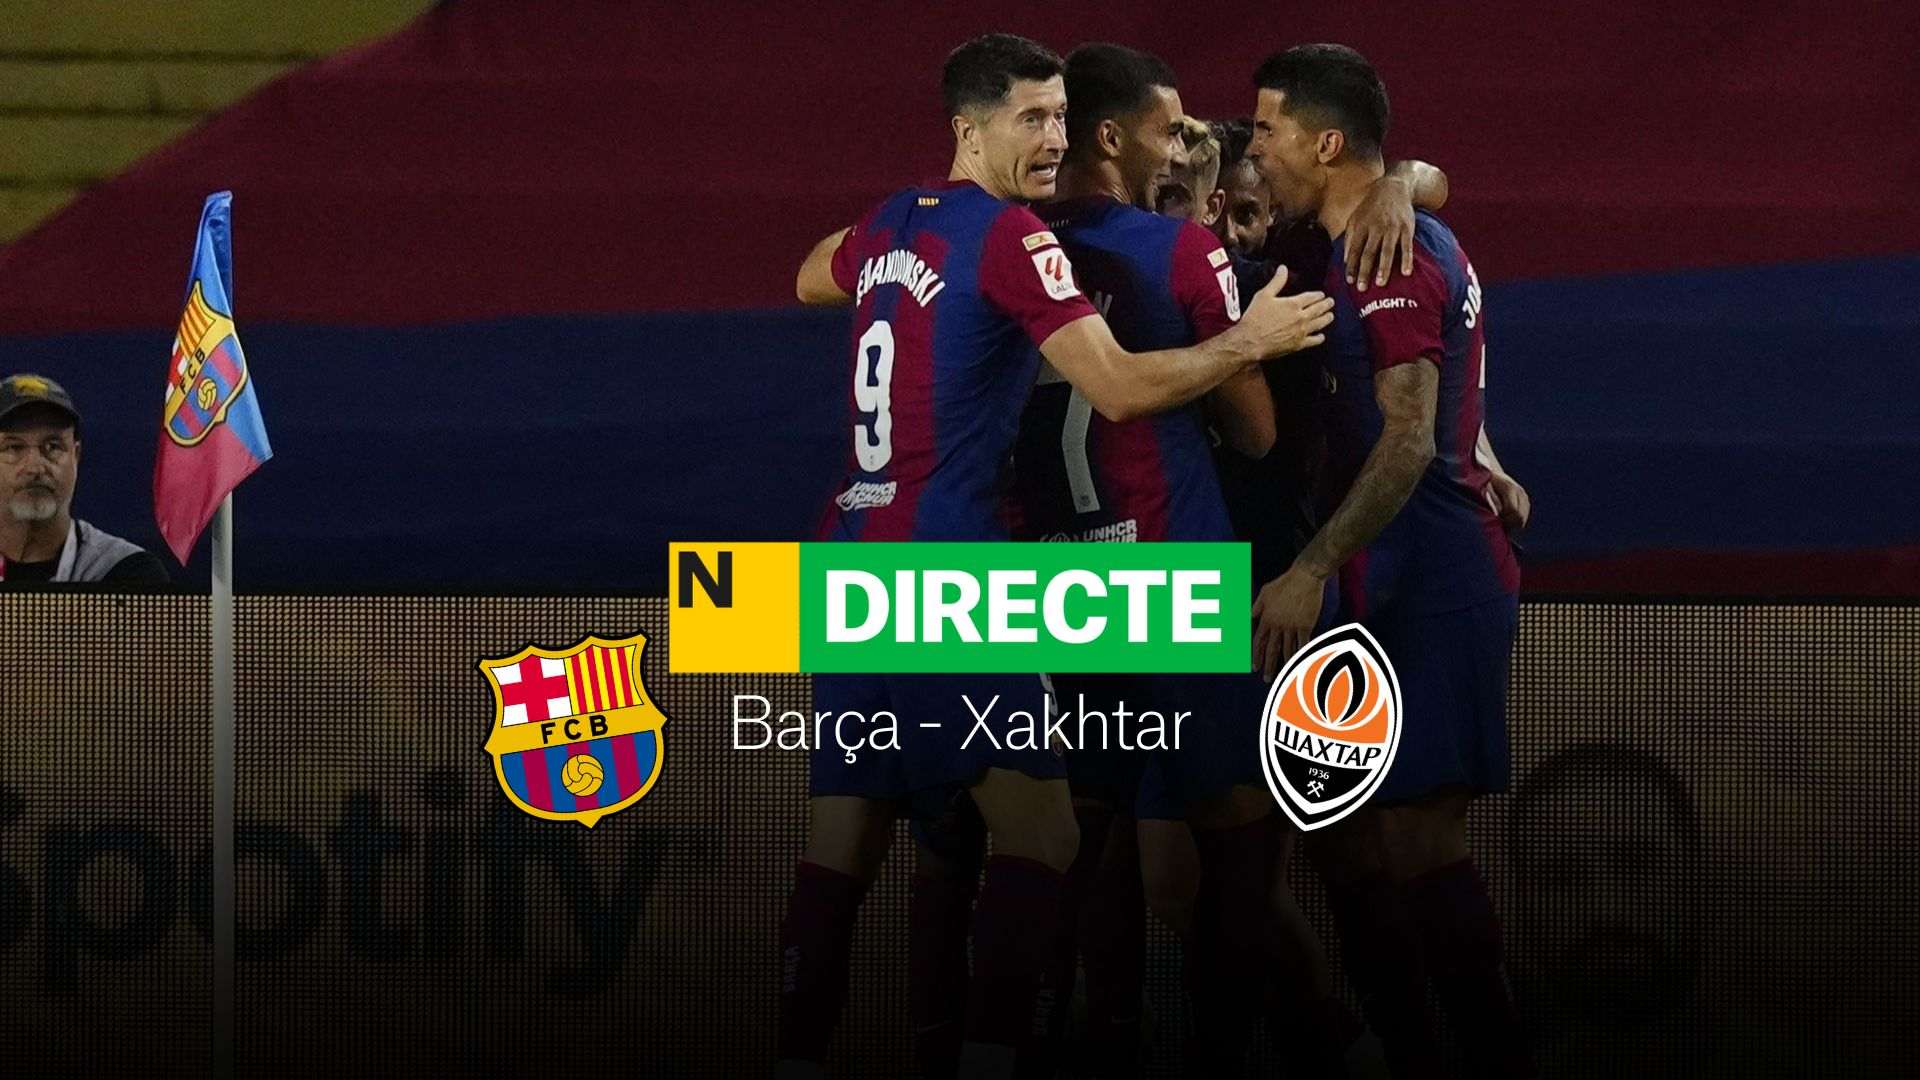 Barça - Xakhtar de Champions League, DIRECTE | Resultat, resum i gols